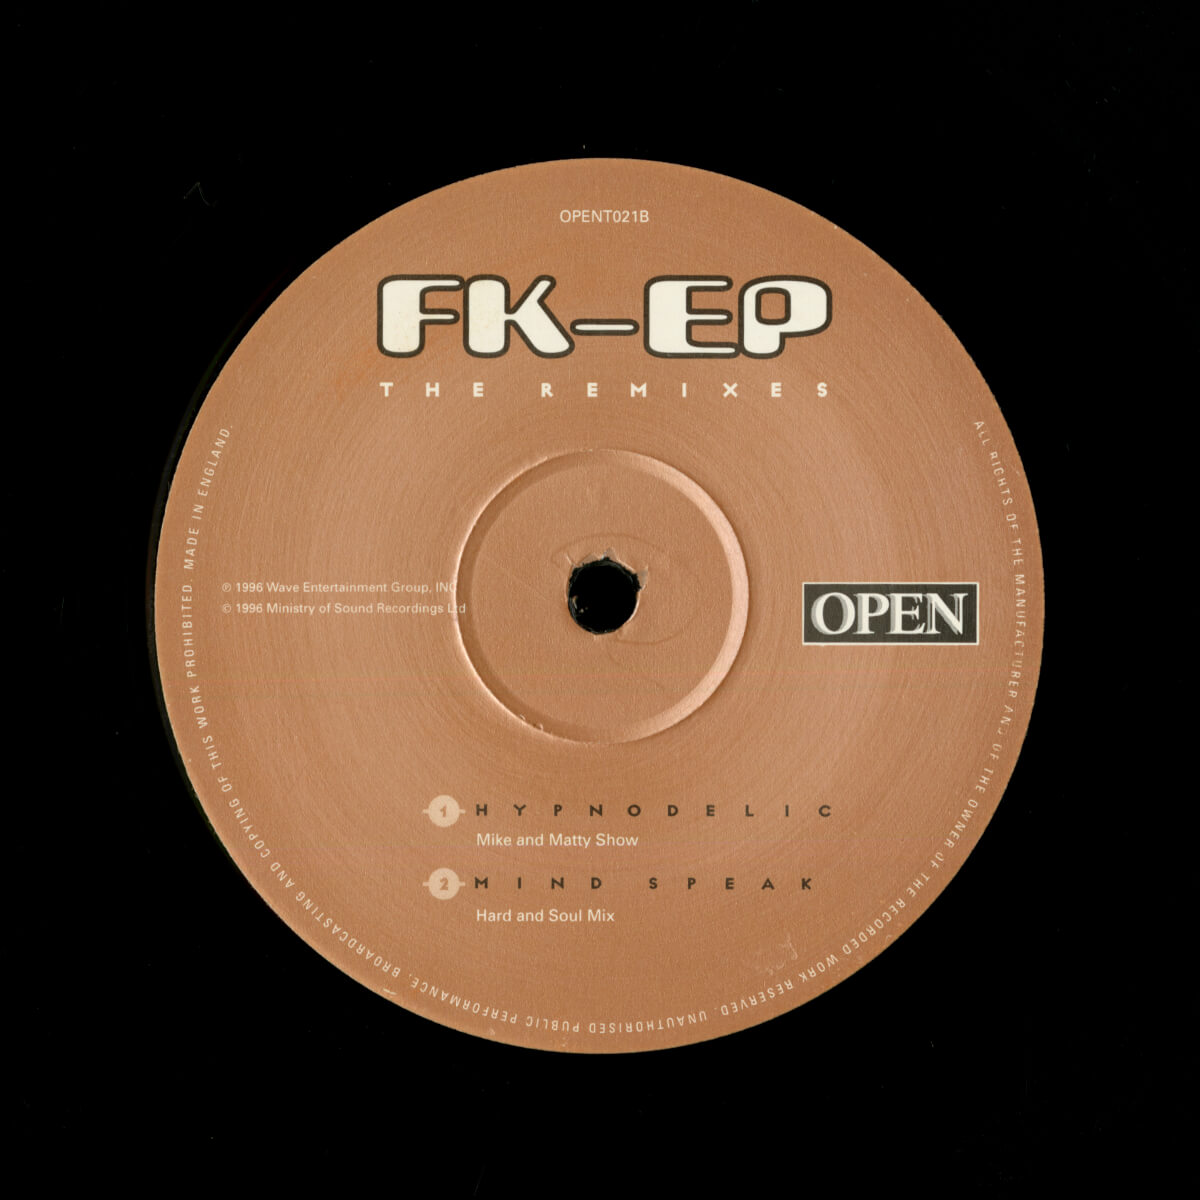 François K – FK-EP (The Remixes)